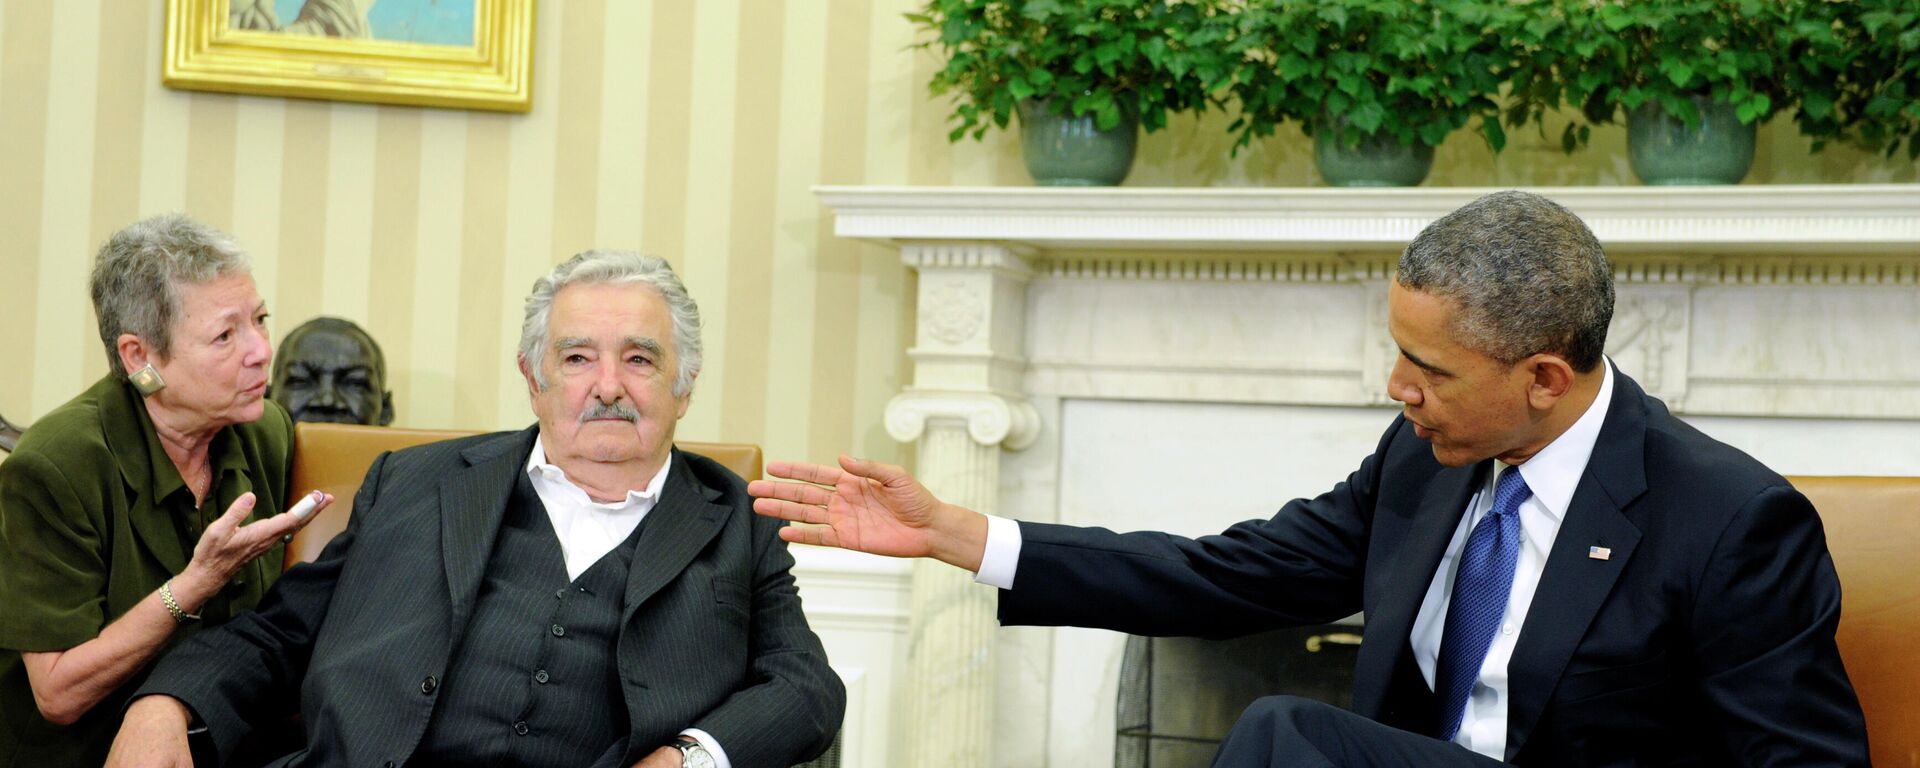 El expresidente uruguayo José Mujica junto a su par estadounidense Barack Obama durante una reunión en la Casa Blanca en 2014 - Sputnik Mundo, 1920, 17.08.2021